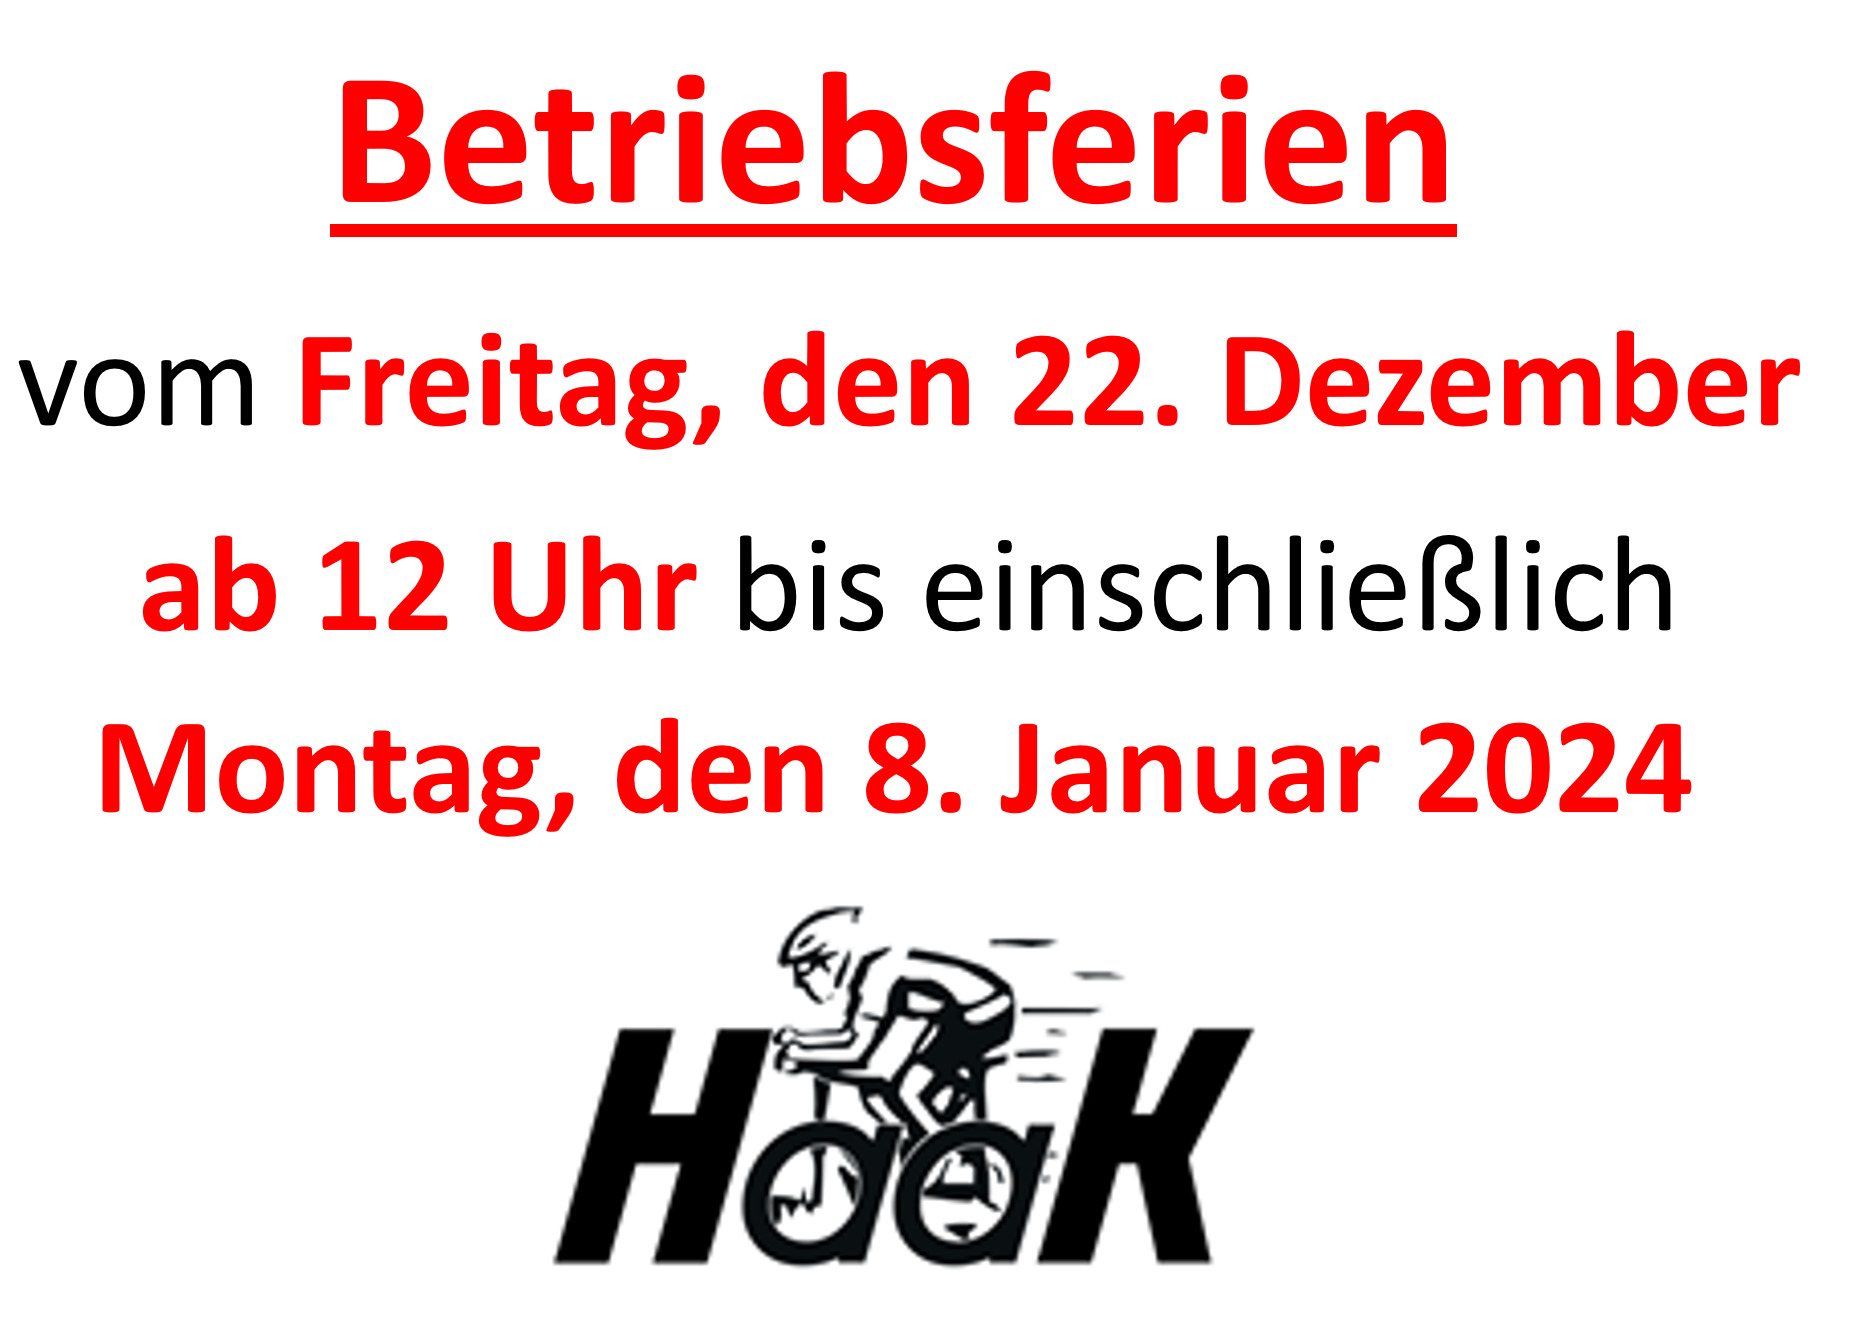 (c) Fahrrad-haak.de